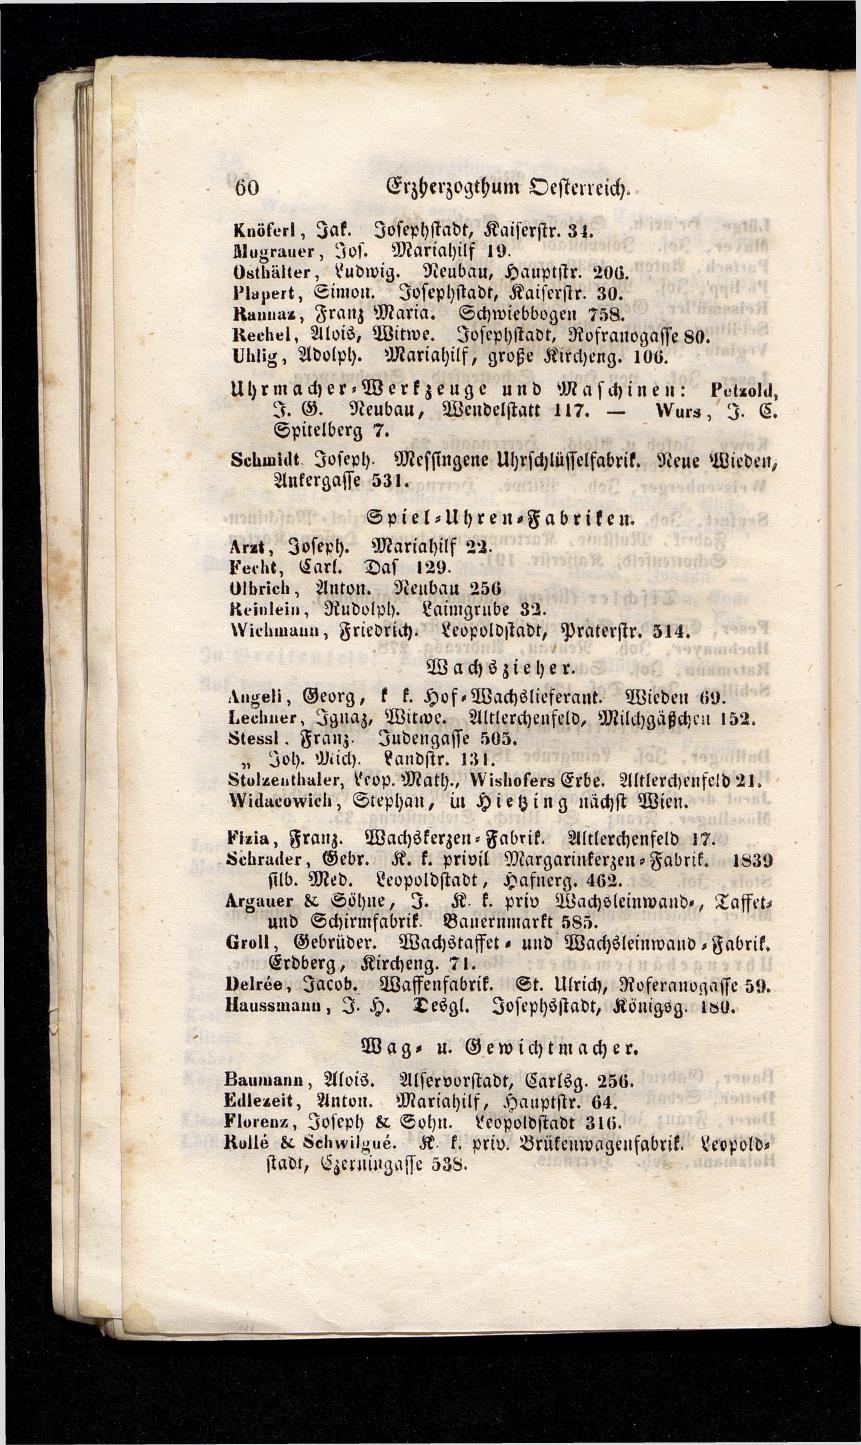 Grosses Adressbuch der Kaufleute. No. 13. Oesterreich ober u. unter der Enns 1844 - Seite 64